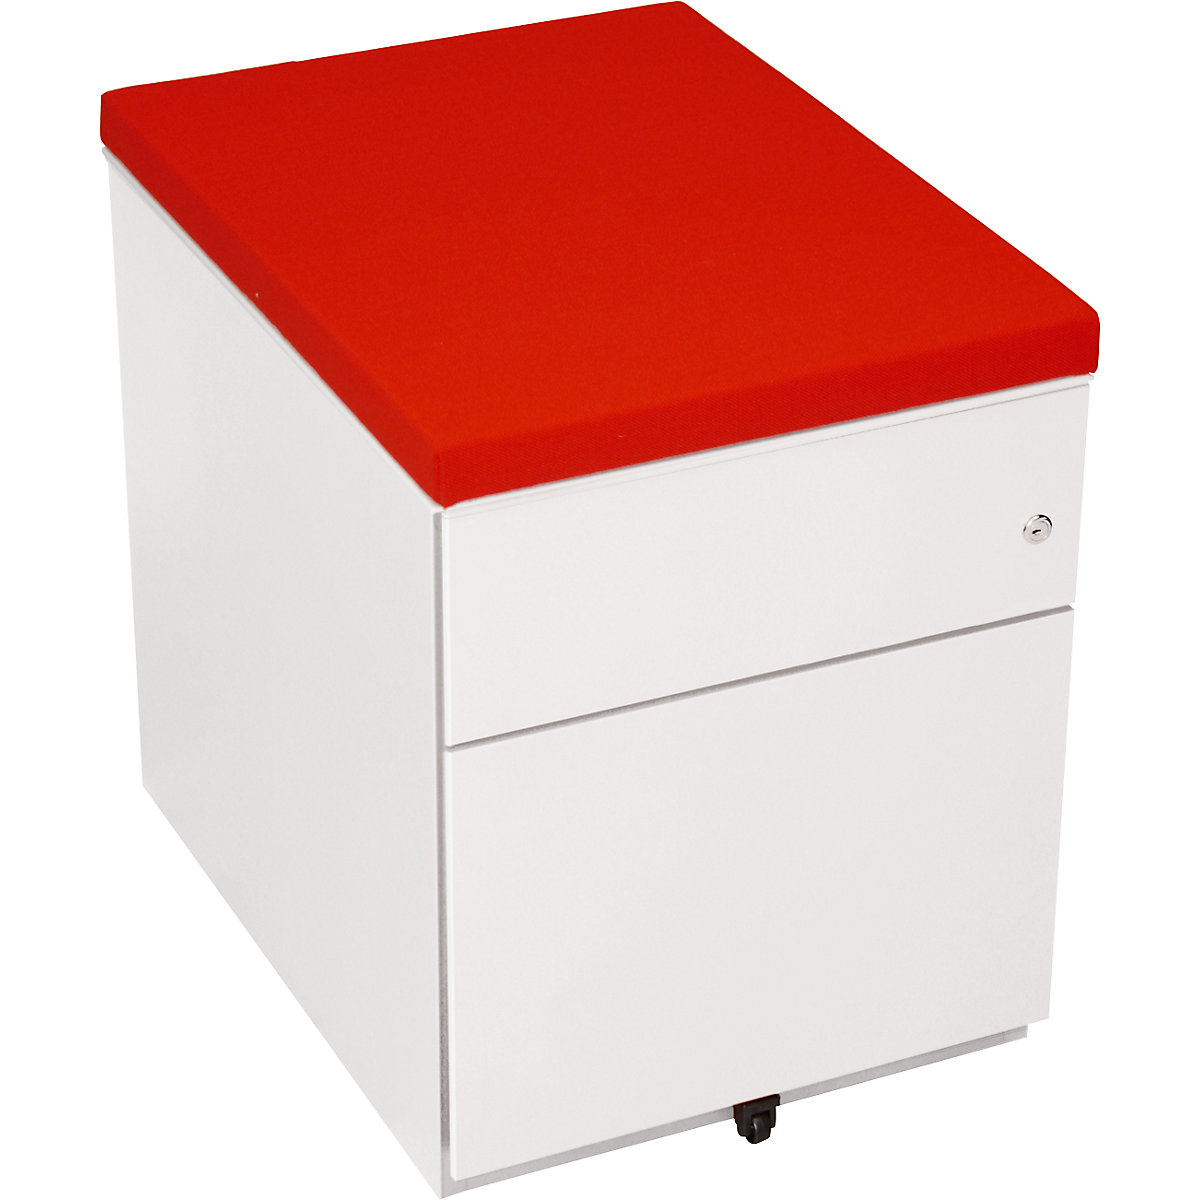 Jastuk za sjedenje – BISLEY, ŠxD 422 x 567 mm, u crvenoj boji-2